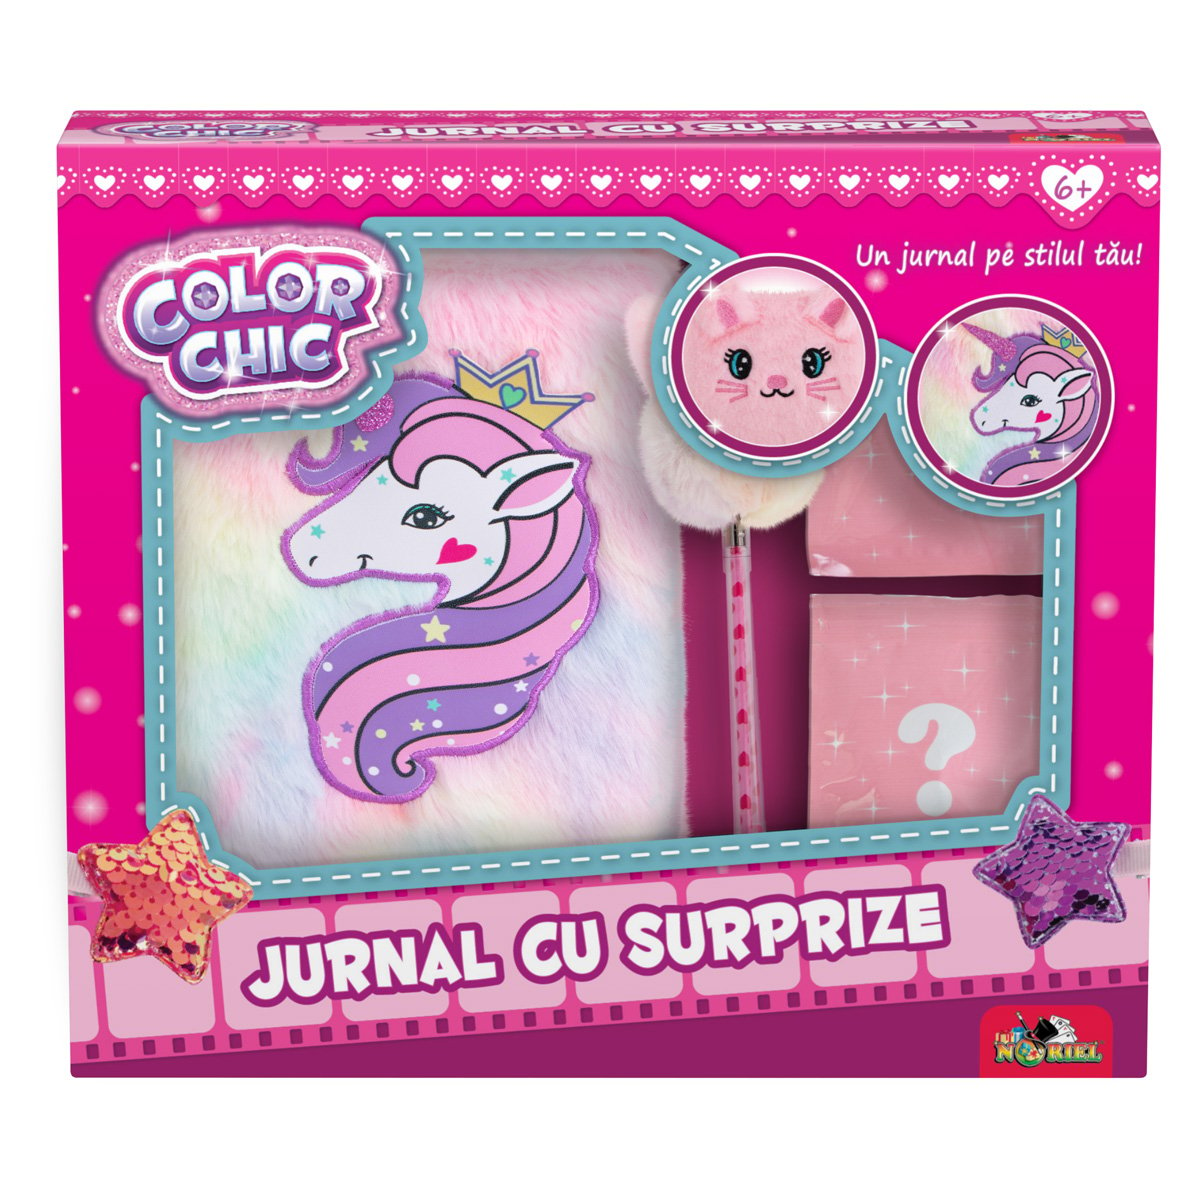 Jurnal Unicorn Color Chic, cu surprize Color Chic